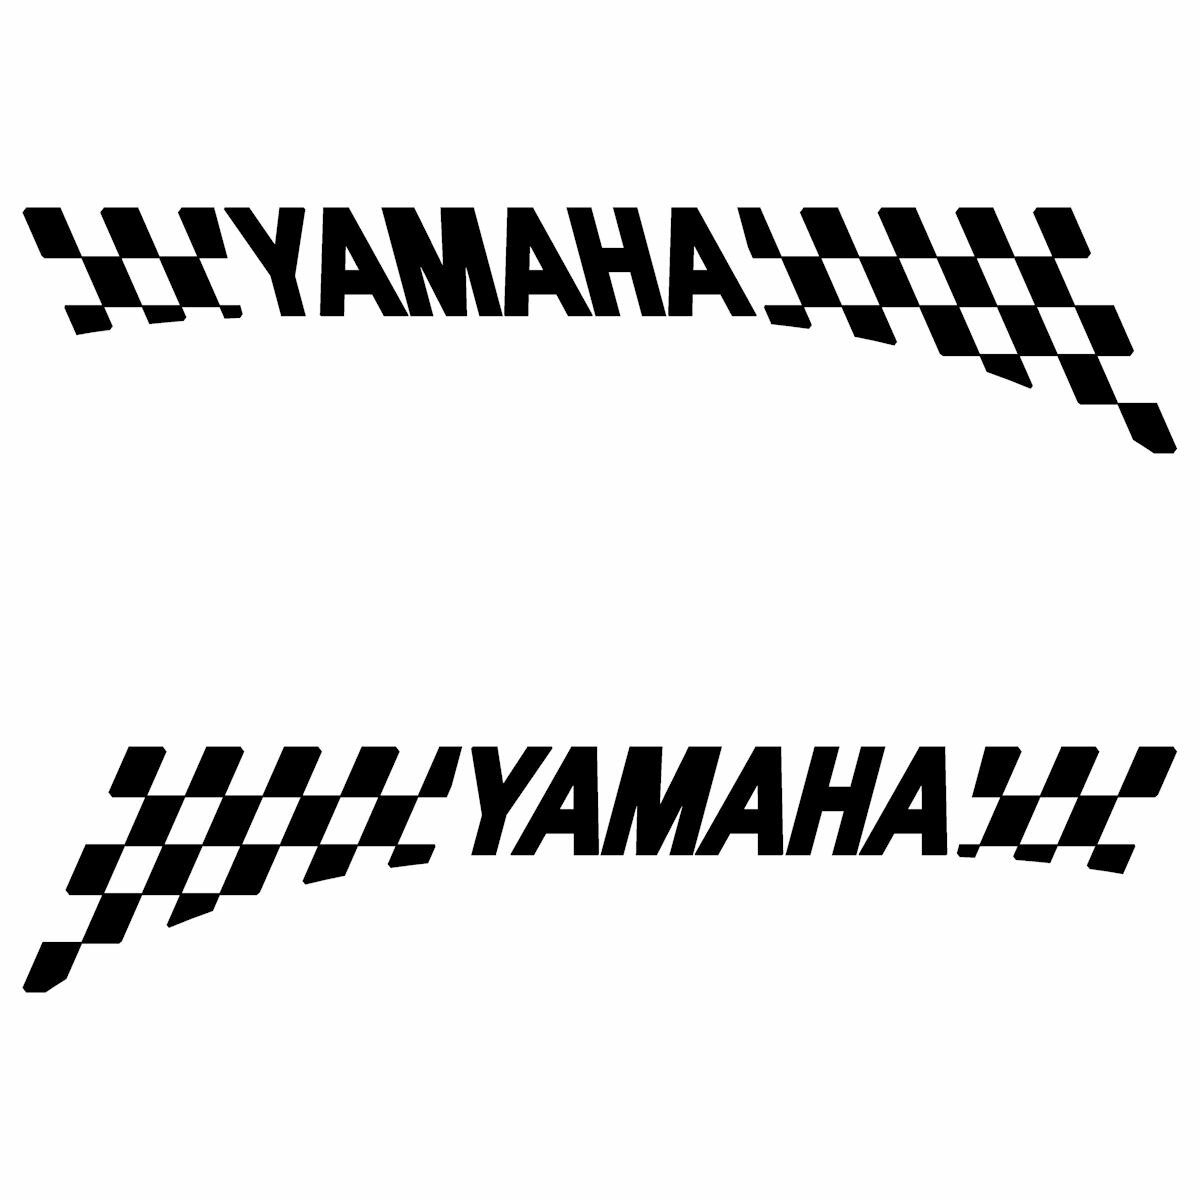 ヤマハ YAMAHA レーシング チェッカー エンブレム フロント サイド フェンダー用 3M社製 強粘着シート ステッカー （Lサイズ）：8cm × 34cm 枠内 × 左右反転セット